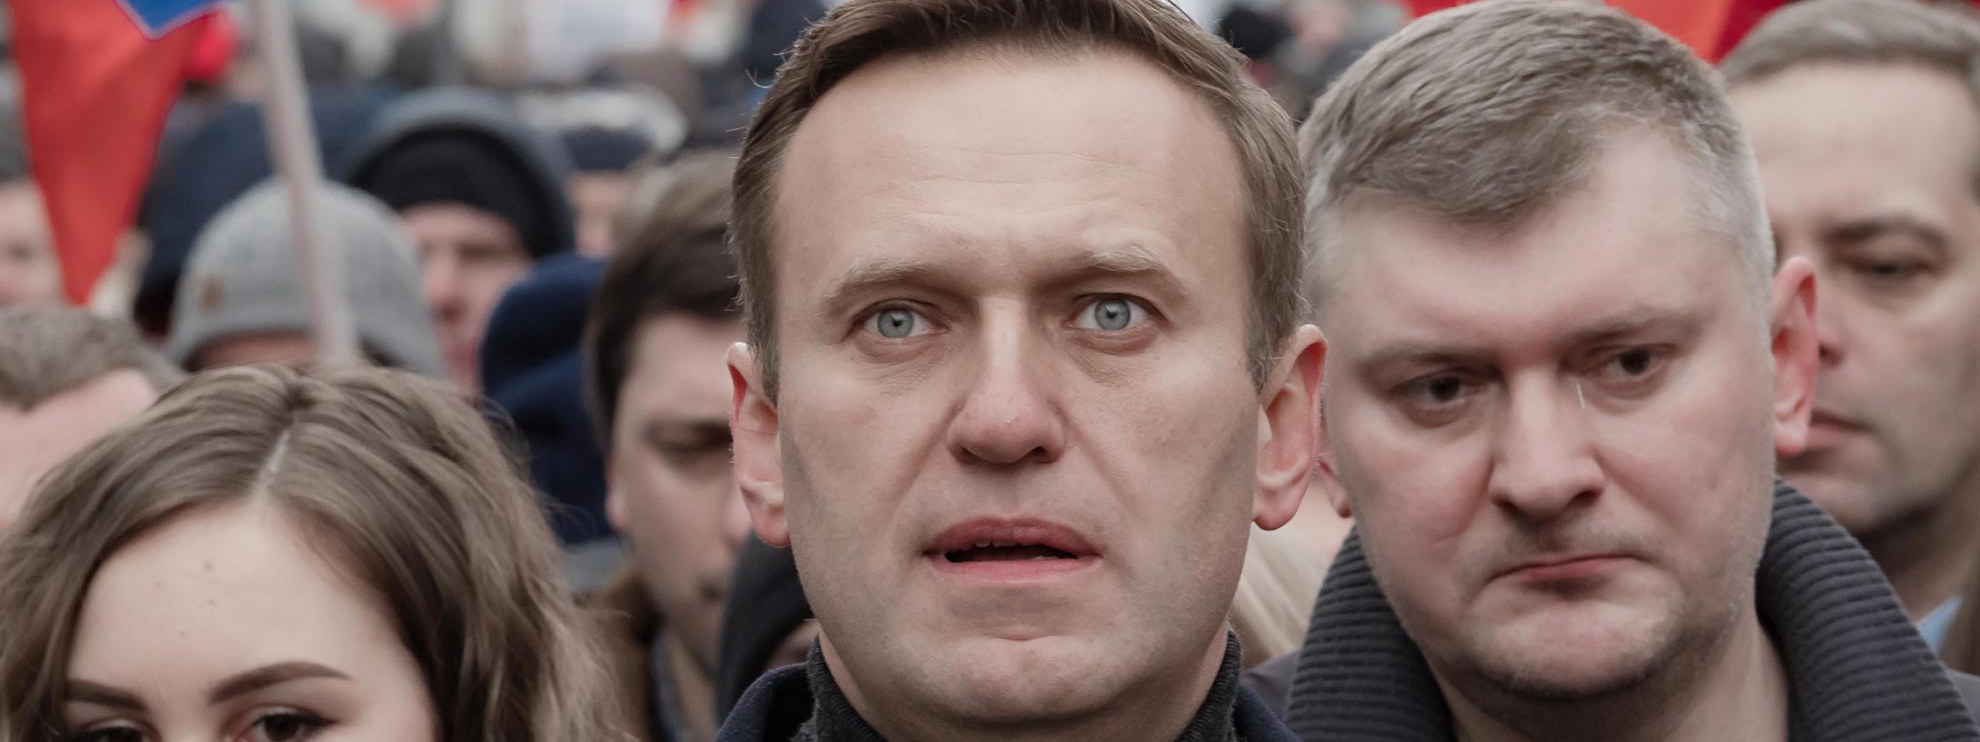 Symbolbild. Das ursprüngliche Bild wurde aus Urheberrechtsgründen ersetzt / Alexei Navalny an einer Kundgebung 2020 © Michał Siergiejevicz / wikicommons